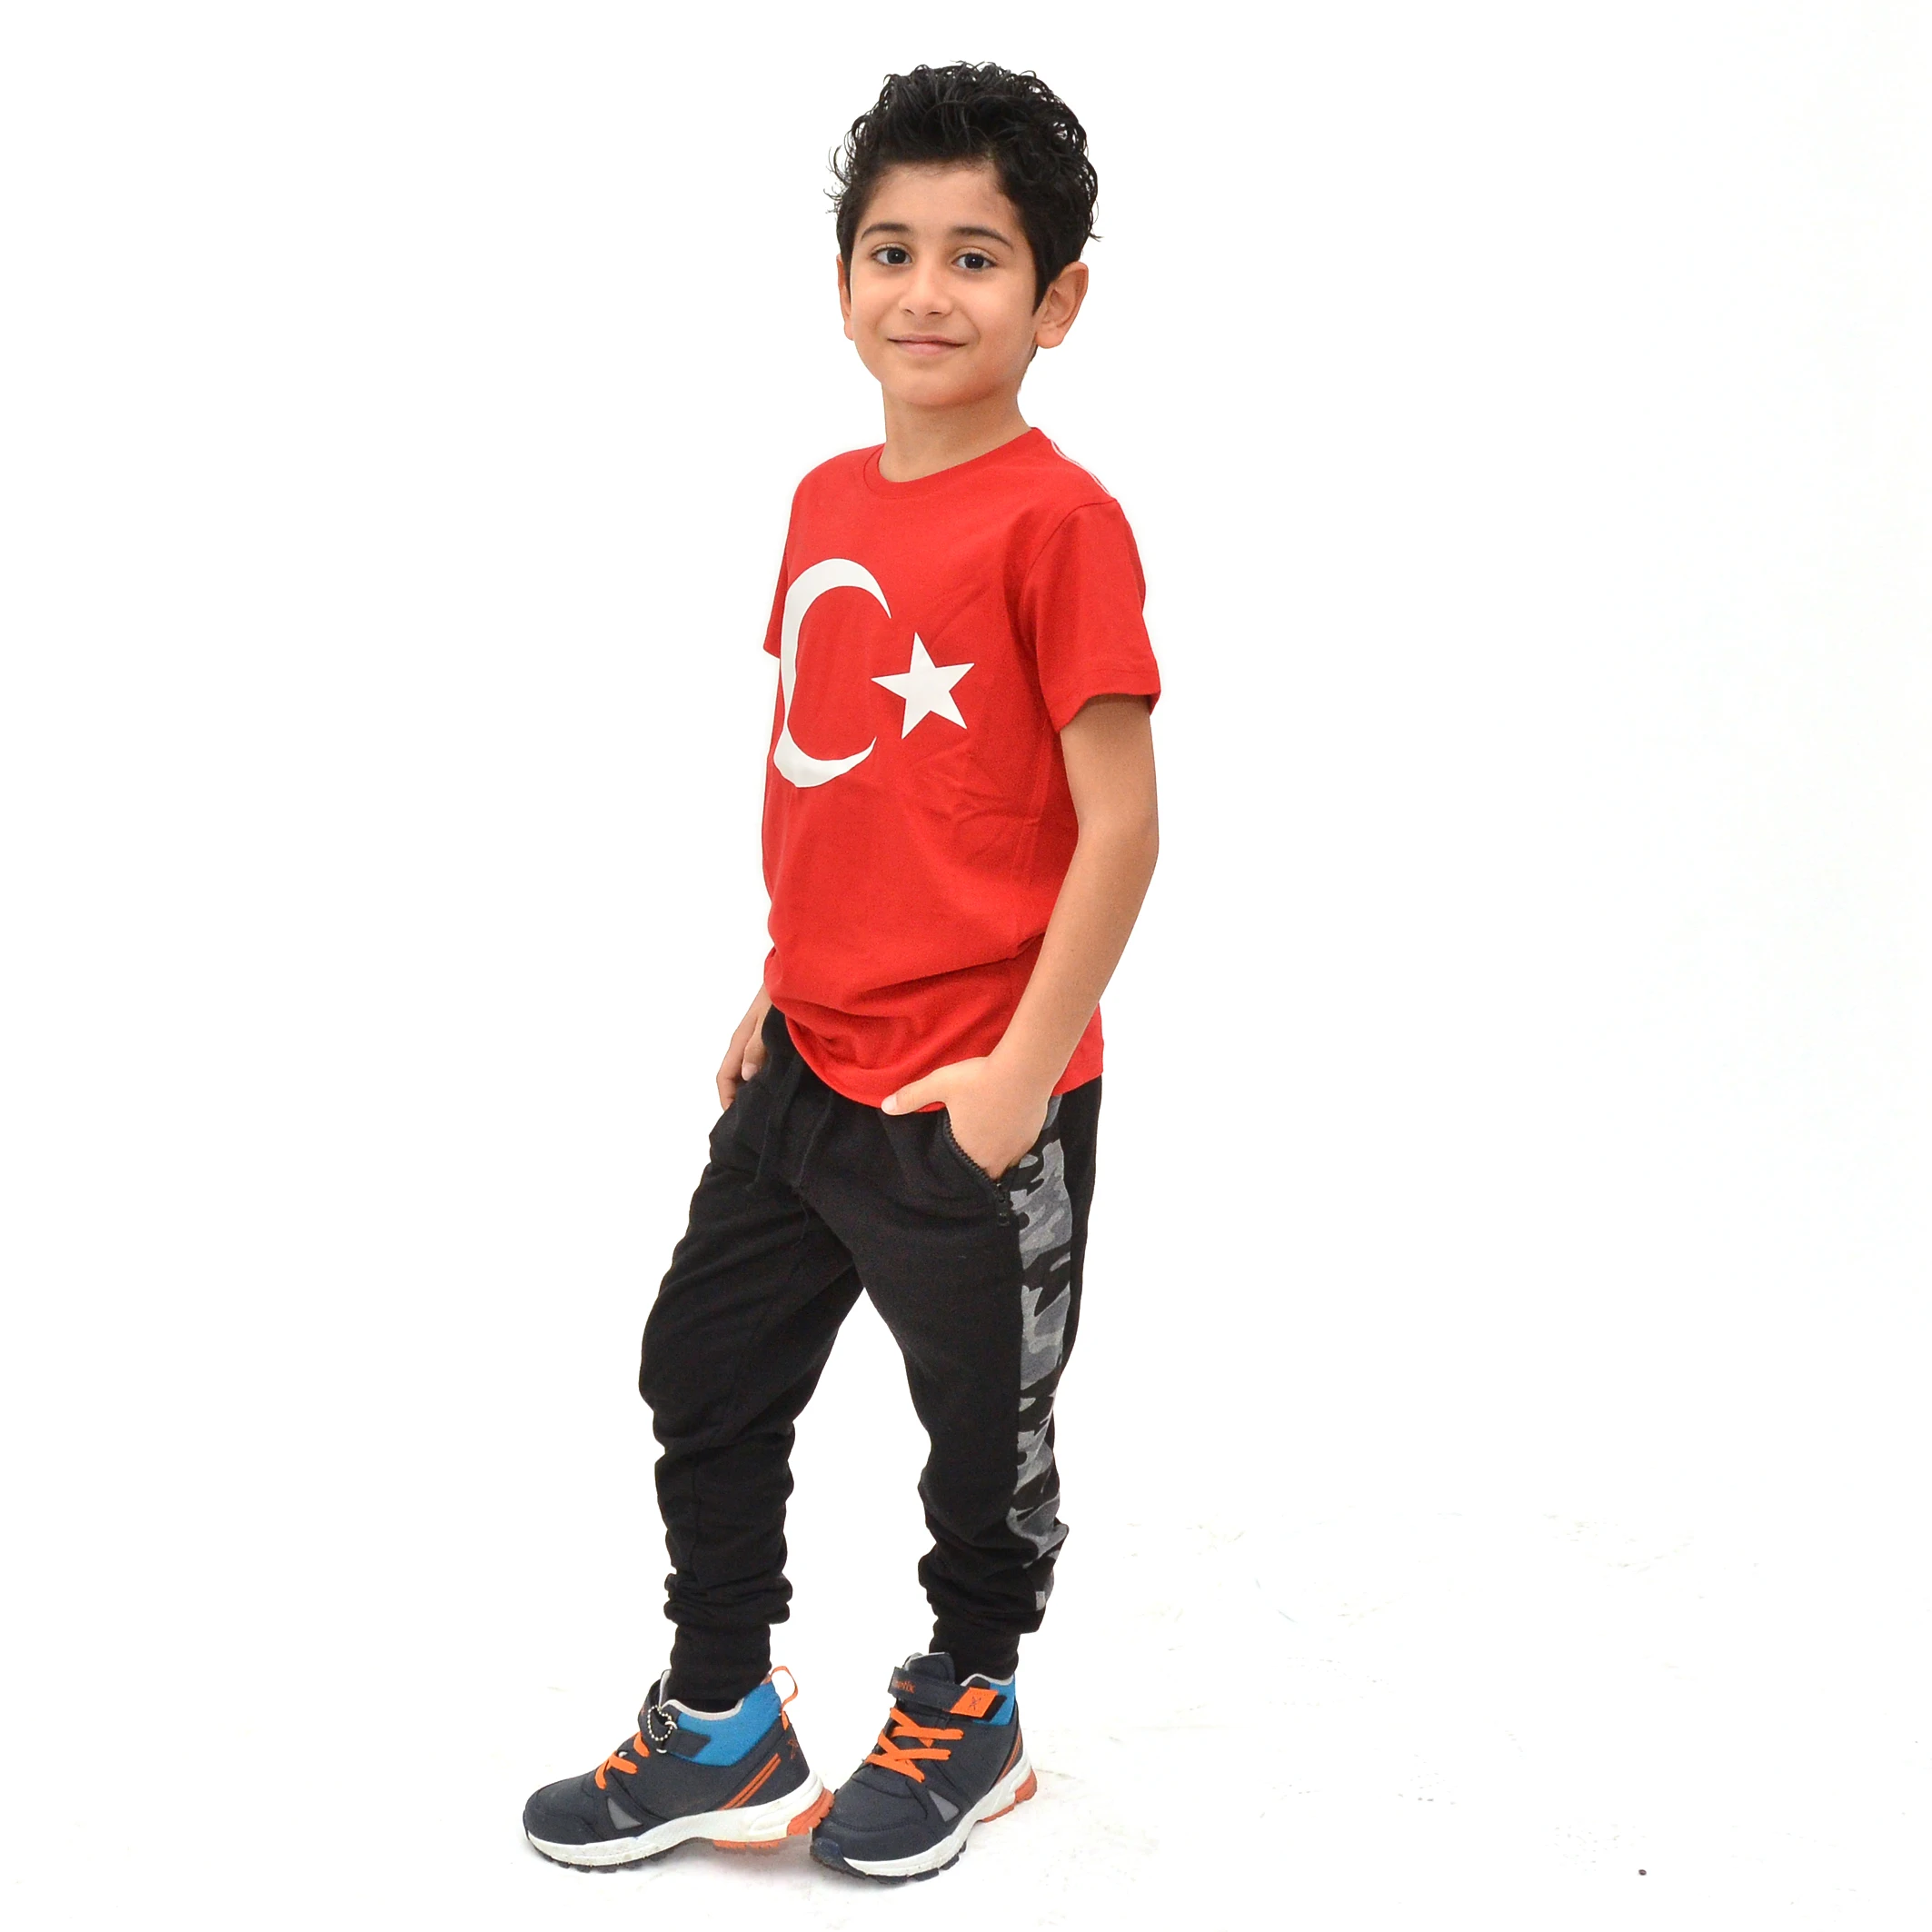 Фото Детские футболки с принтом турецкого флага 23 апреля 19 мая 10 ноября 2020 года